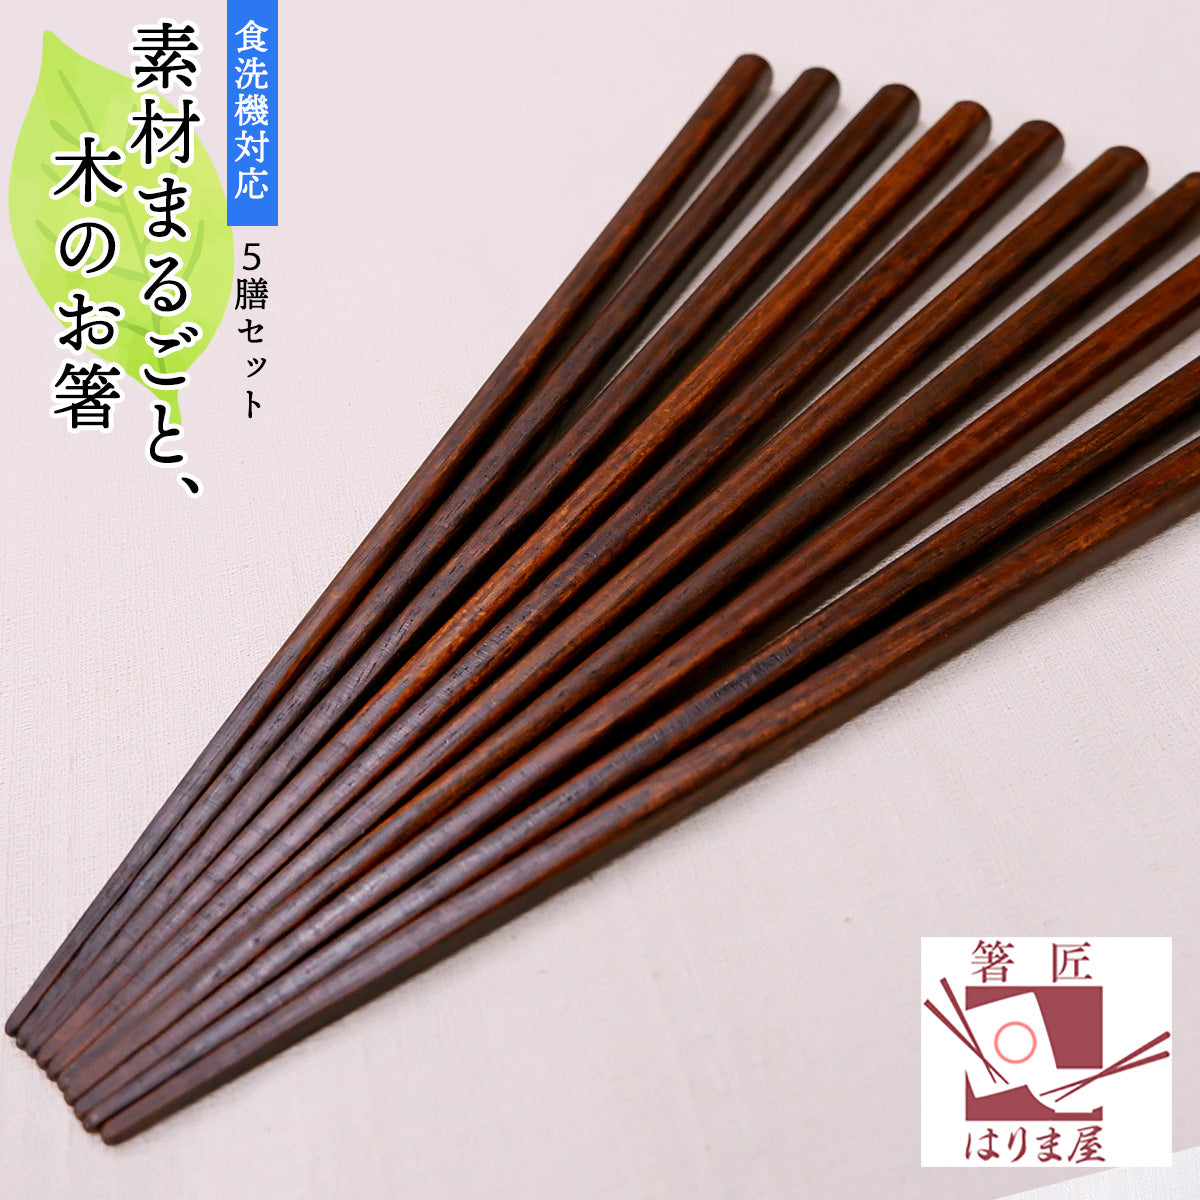 箸 木のお箸 5膳 セット 木製 来客用